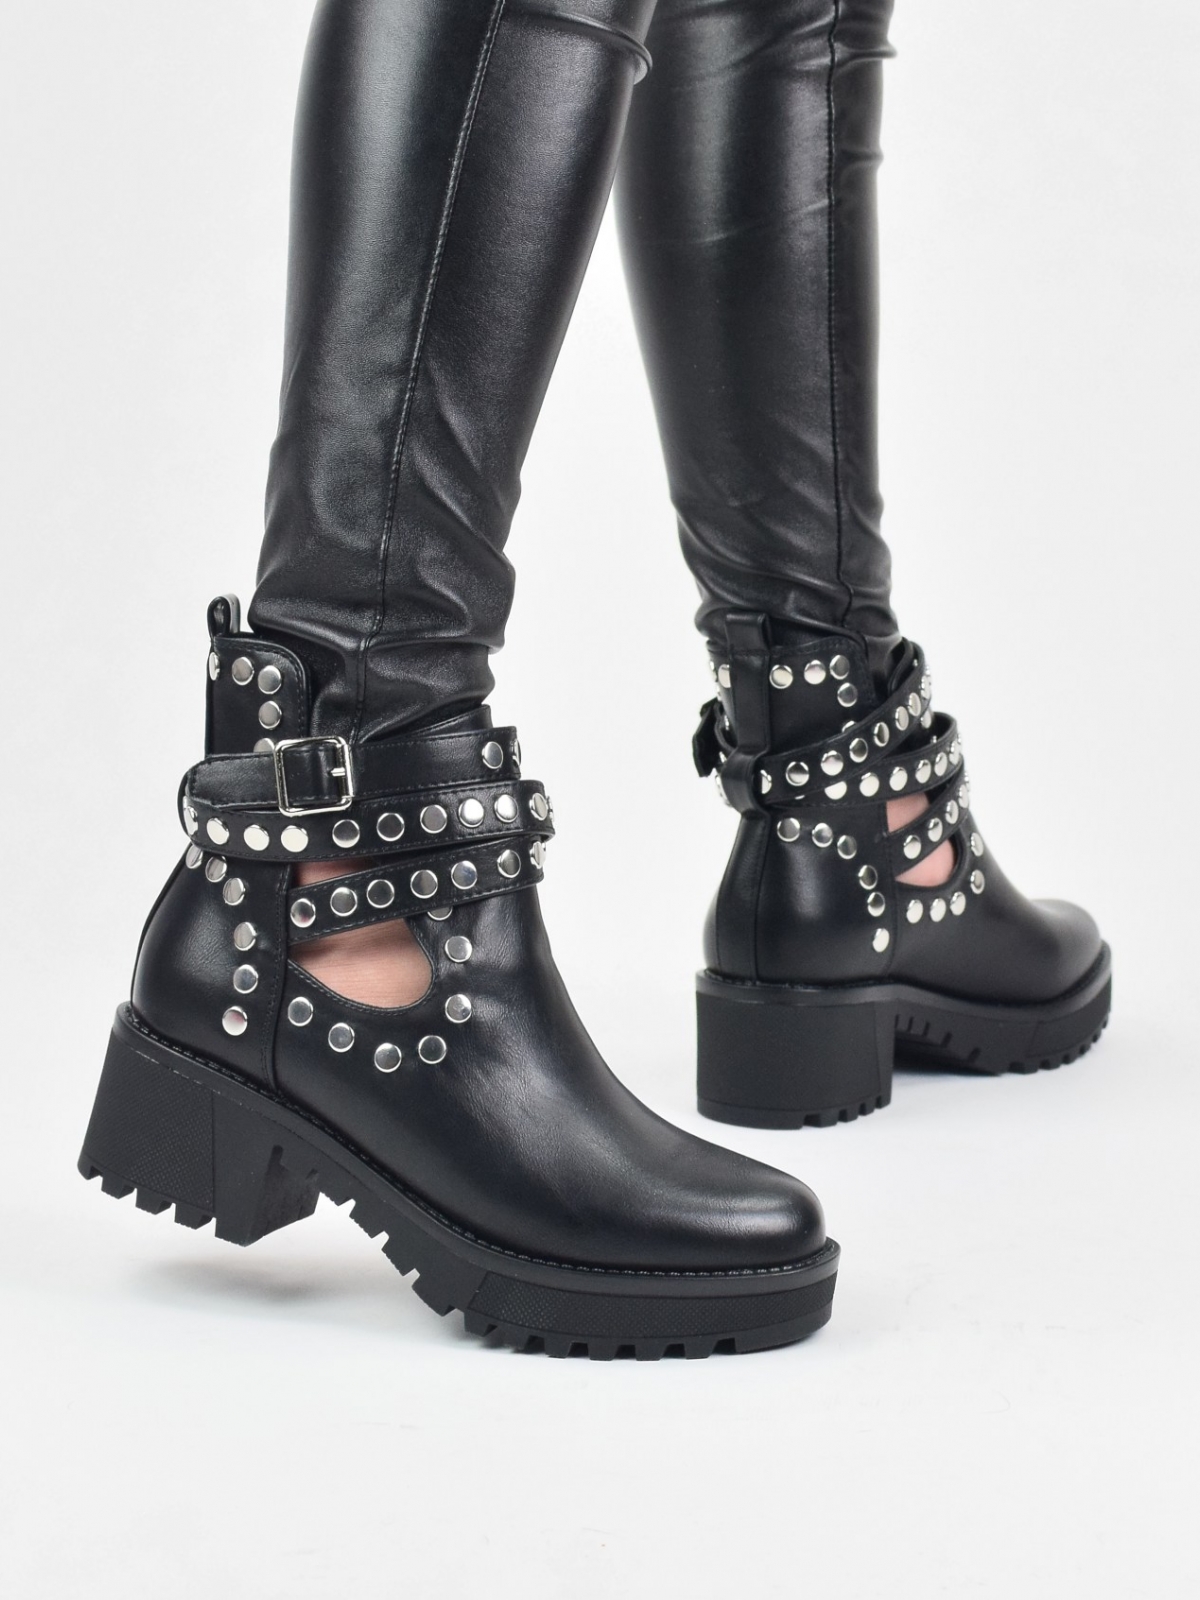 Atvirakulkšniai juodos spalvos moteriški auliniai batai su metalinėmis detalėmis